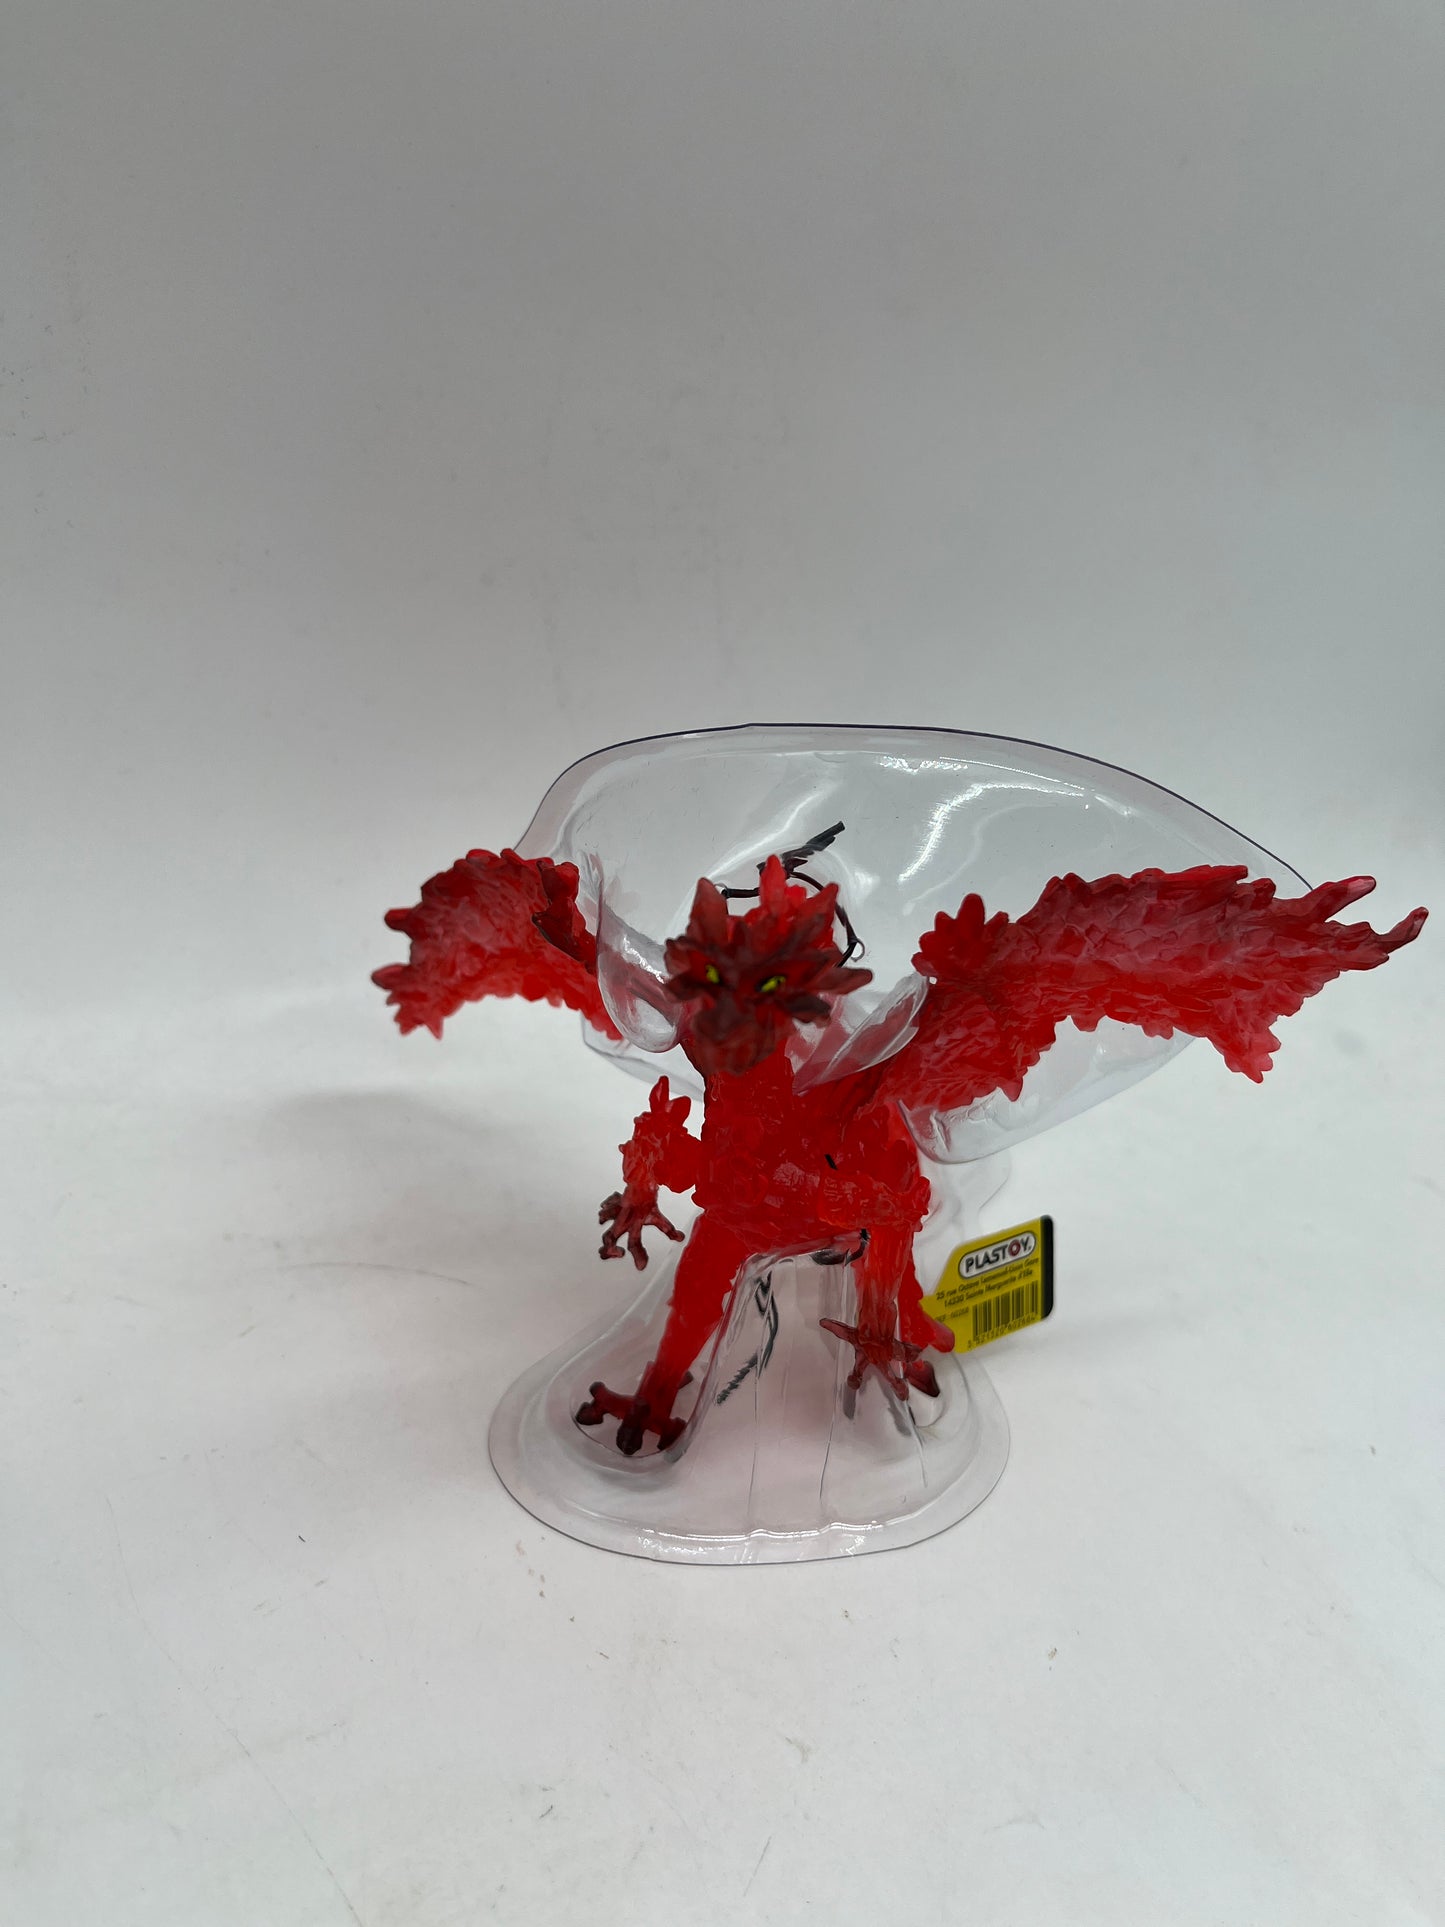 Figurine Plastoy Dragon rouge transparent Neuf avec étiquette